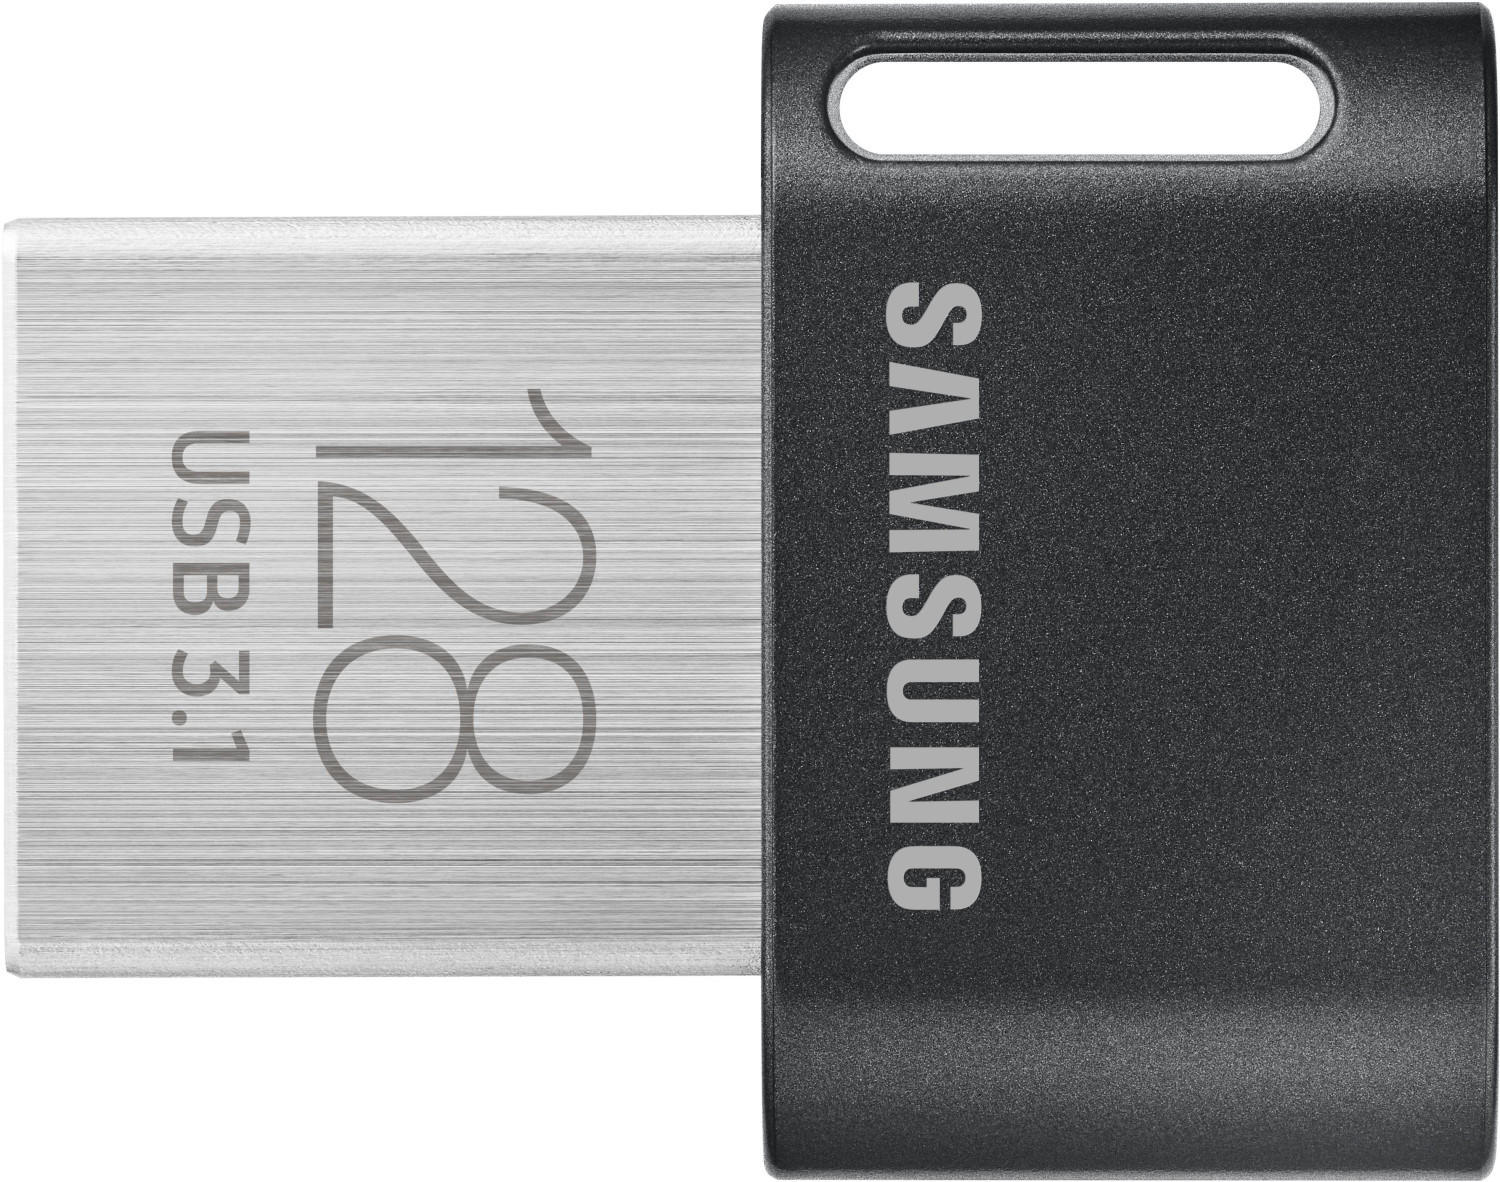 Samsung Fit Plus USB 3.0 128GB (2020) Test ❤️ Testbericht.de April 2022